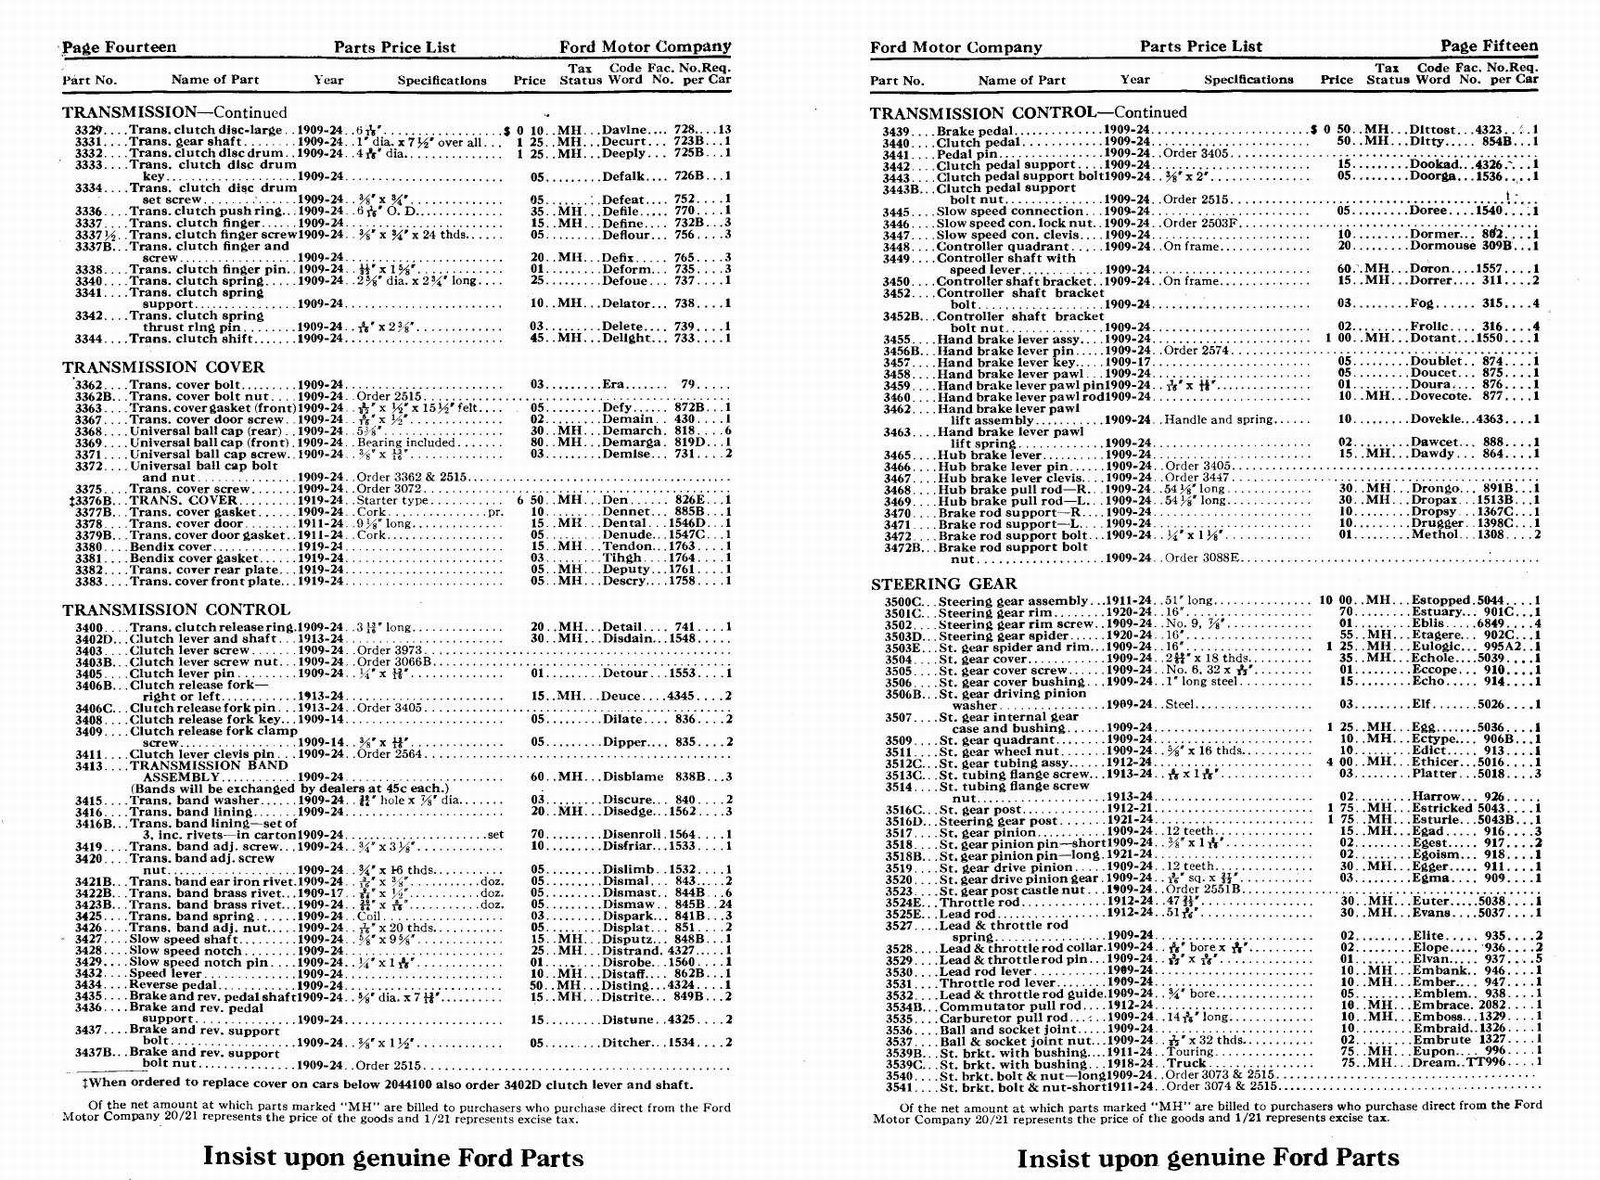 n_1924 Ford Price List-14-15.jpg